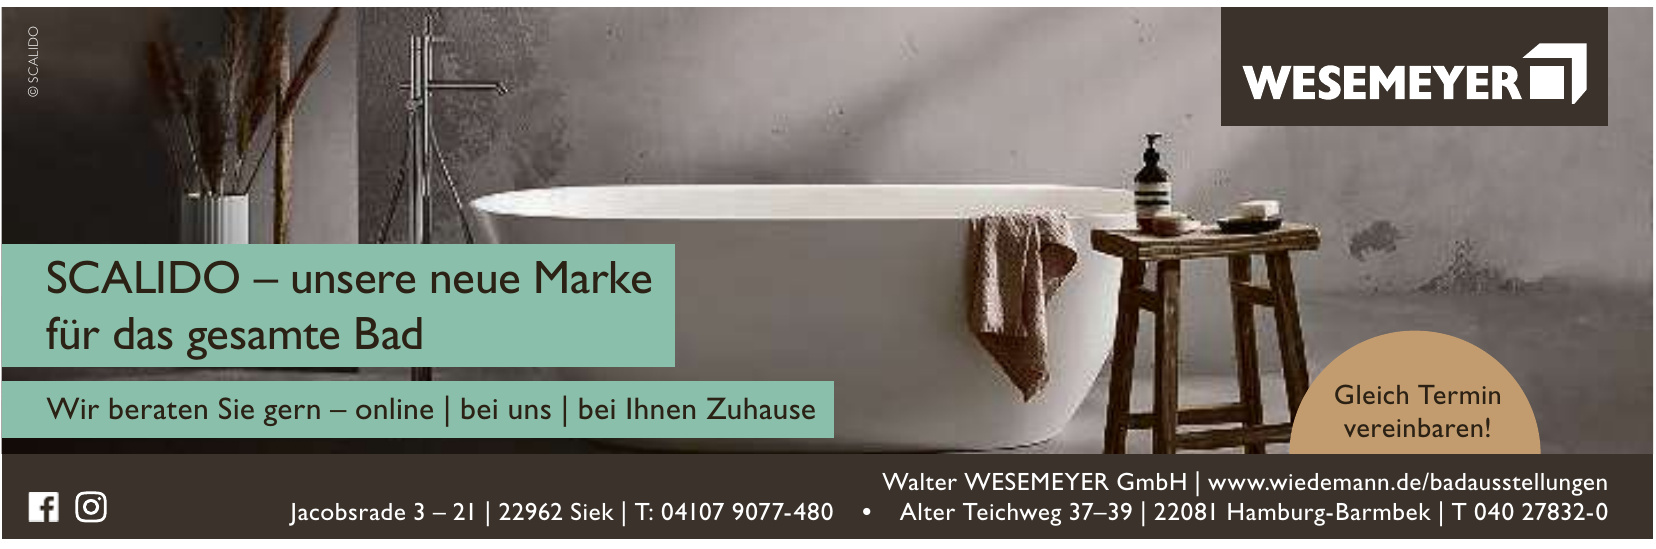 Walter Wesemeyer GmbH